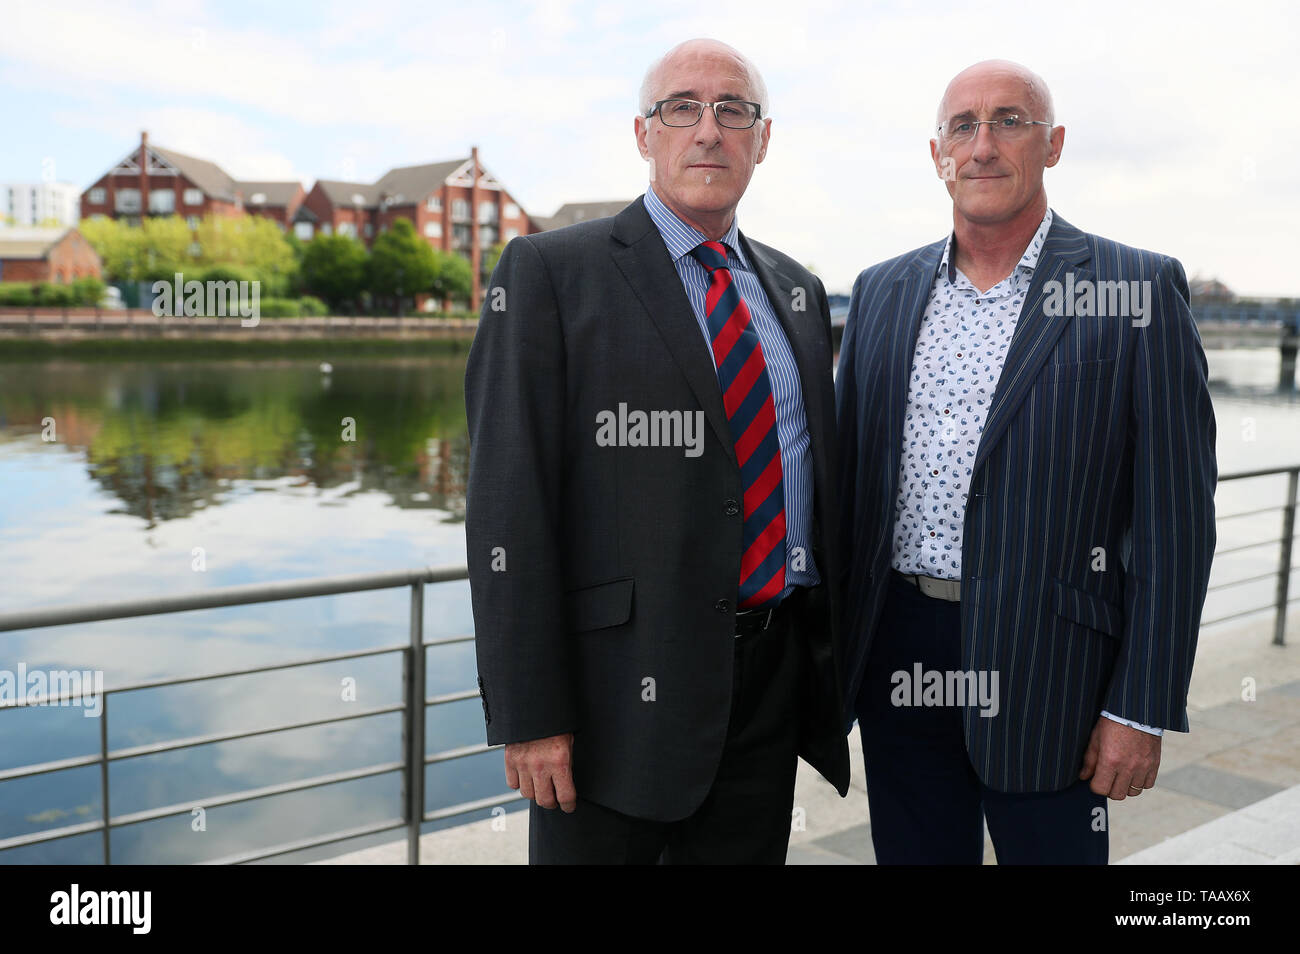 Gemelos de hemofílicos Nigel (izquierda) y Simon Hamilton, quien contrajo hepatitis C como resultado de productos sanguíneos contaminados, asistir a la británica sangre infectada investigación en Belfast donde dieron pruebas. Foto de stock